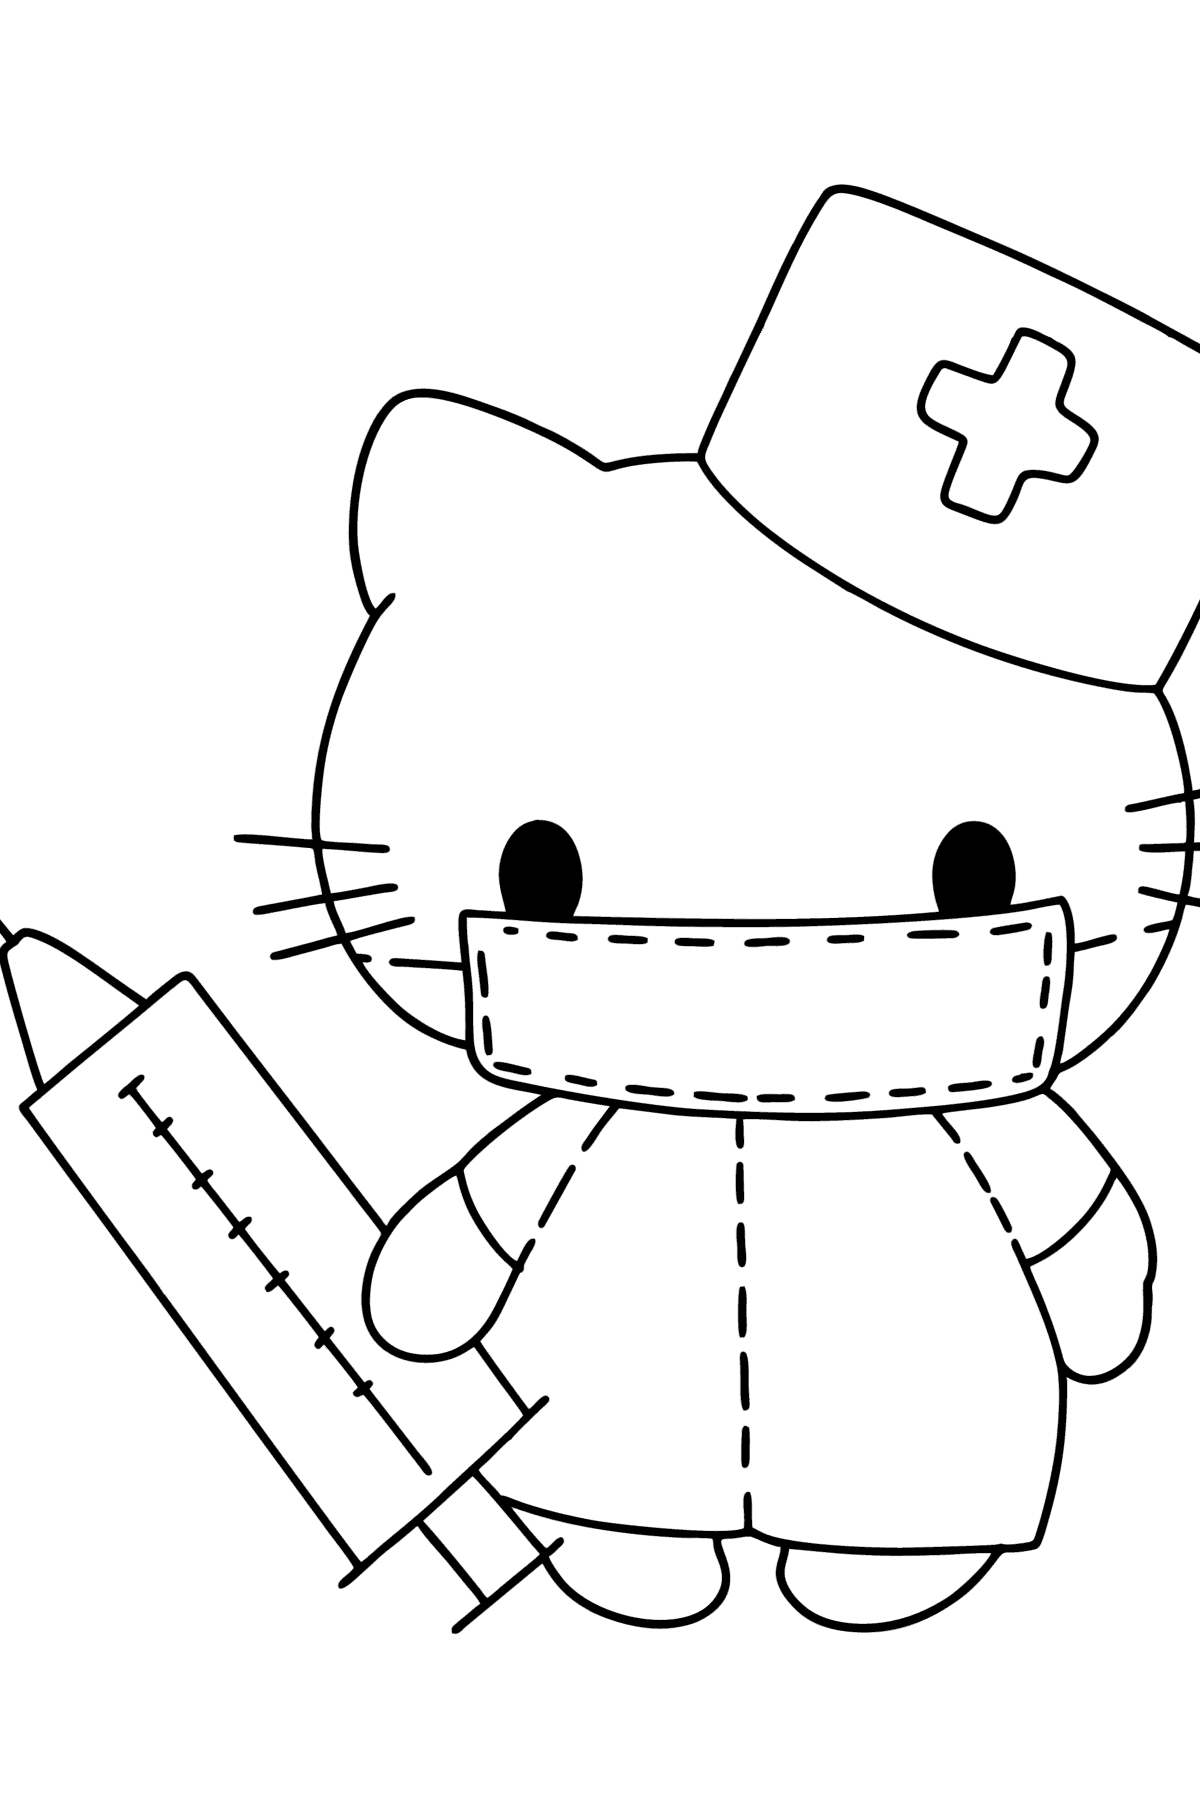 Ausmalbild Hello Kitty Krankenschwester - Malvorlagen für Kinder